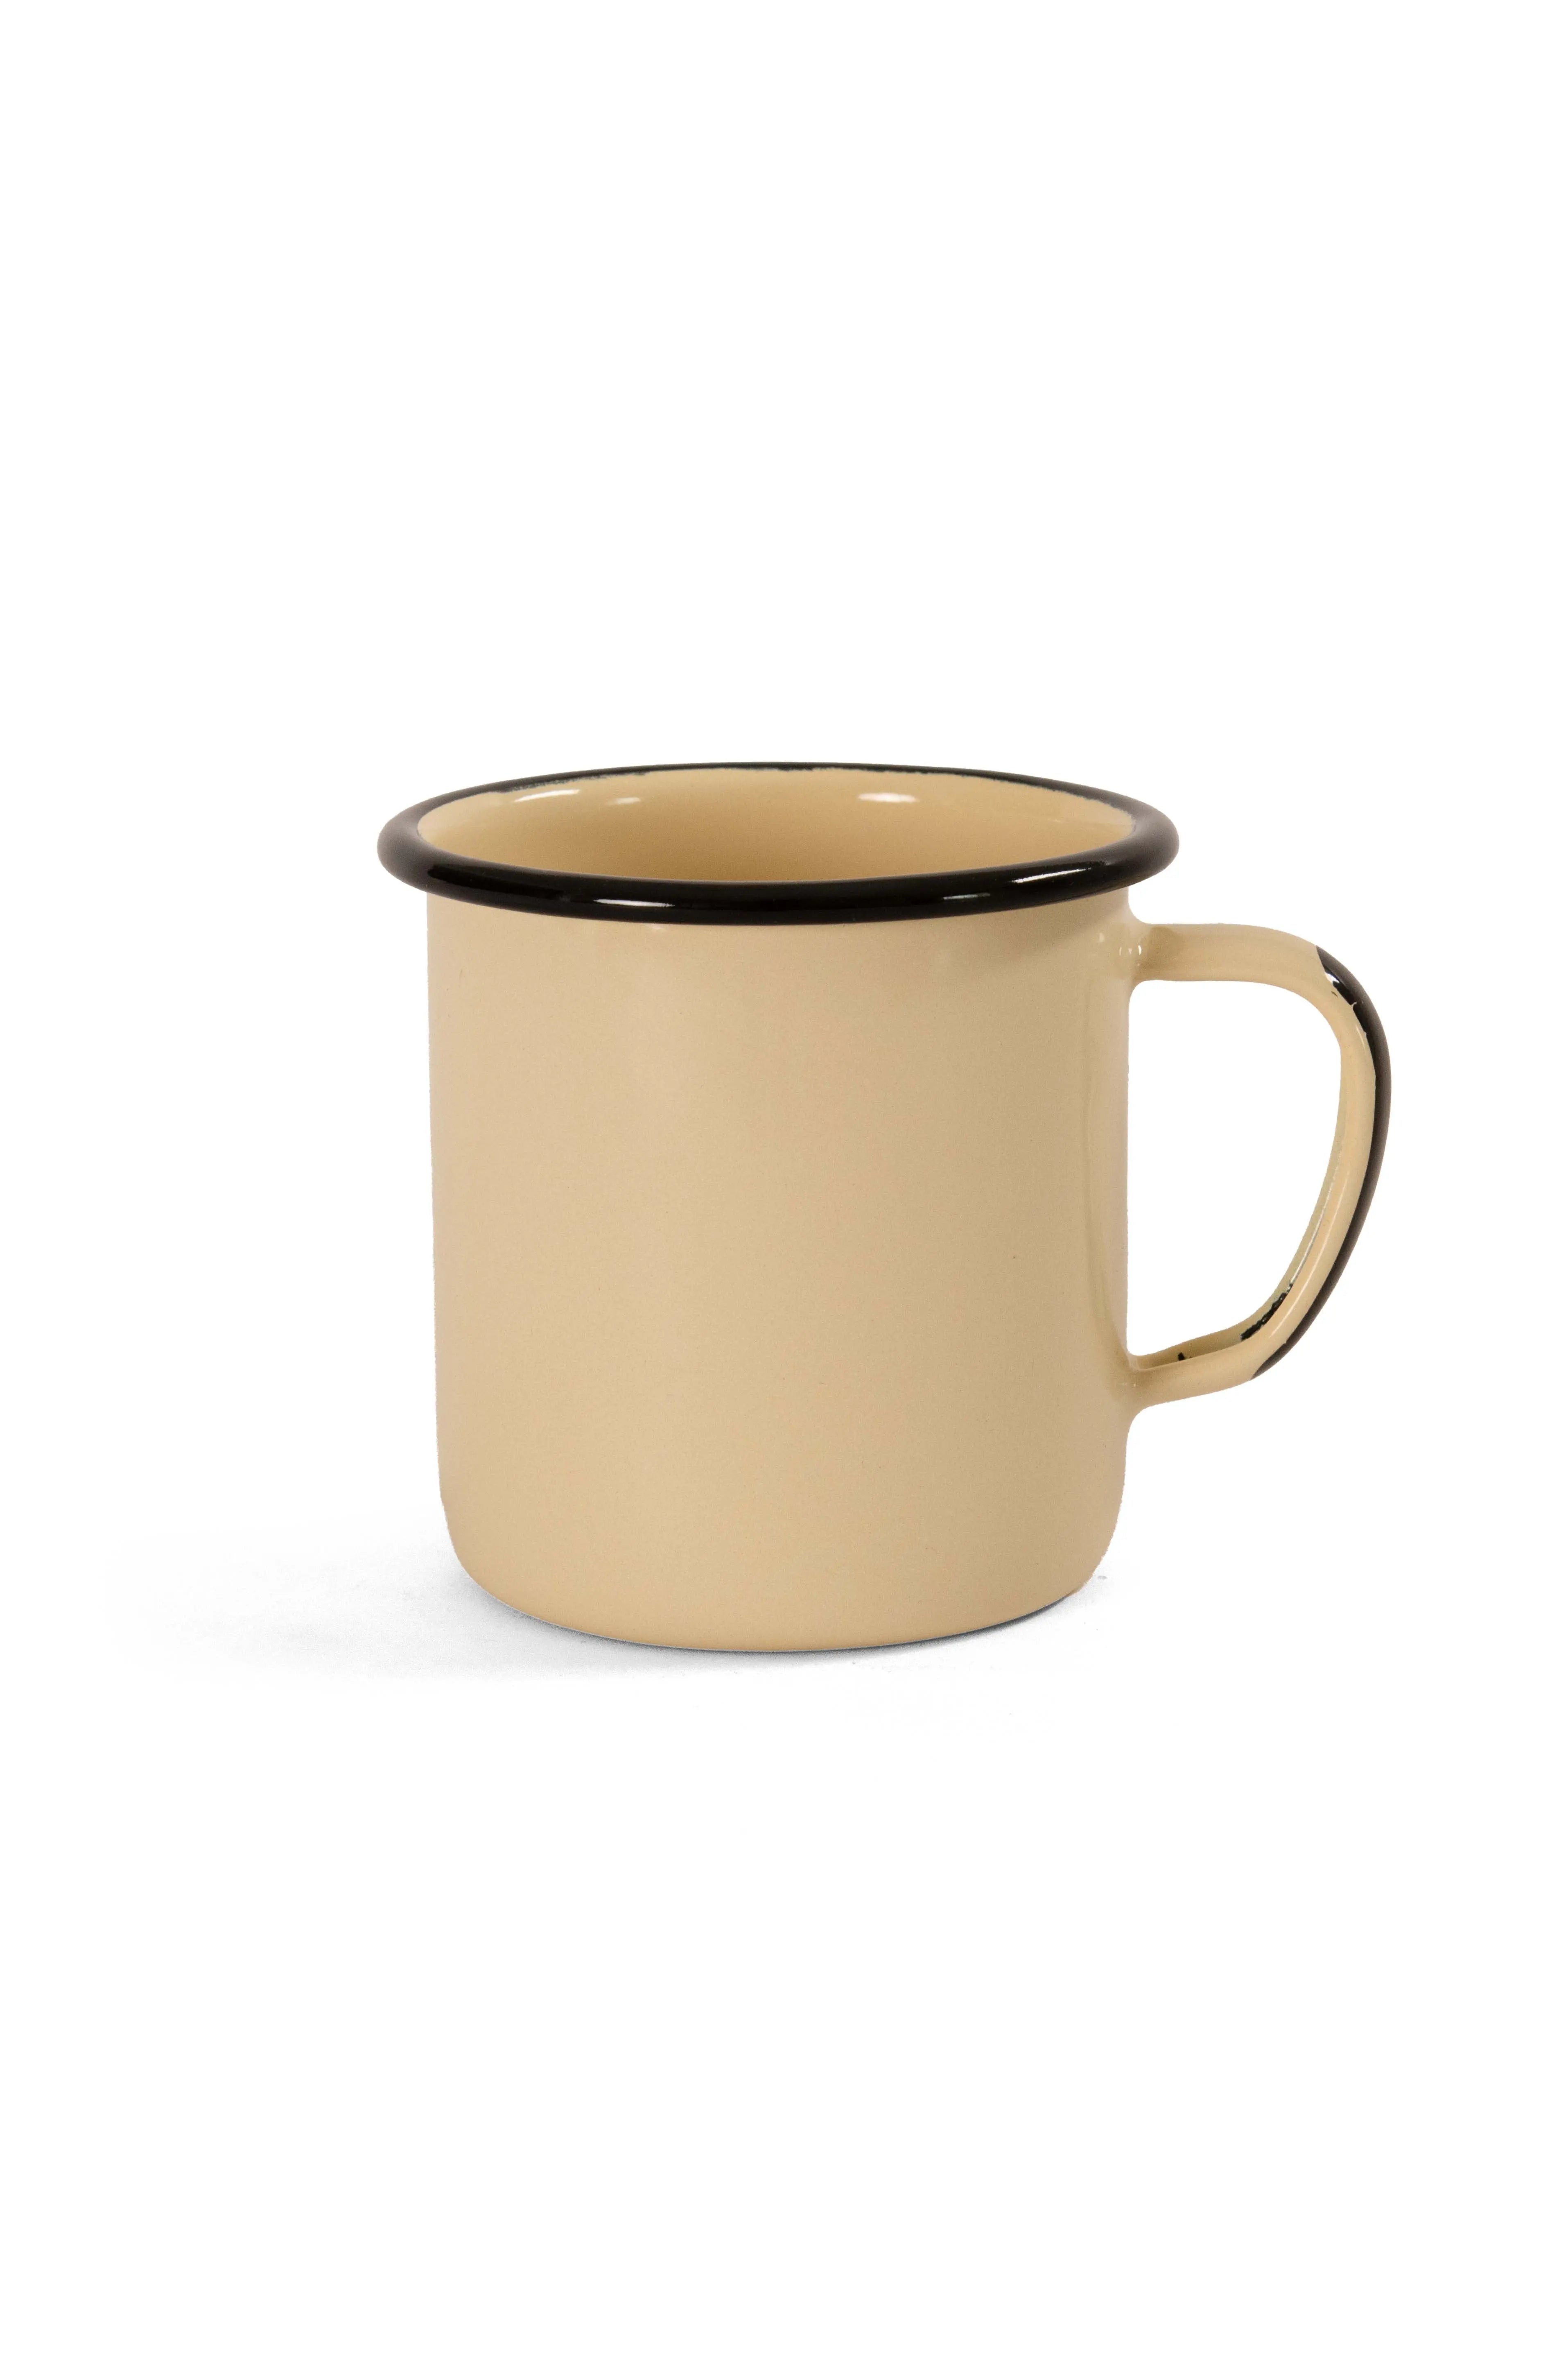 Cream enamel coffee mug